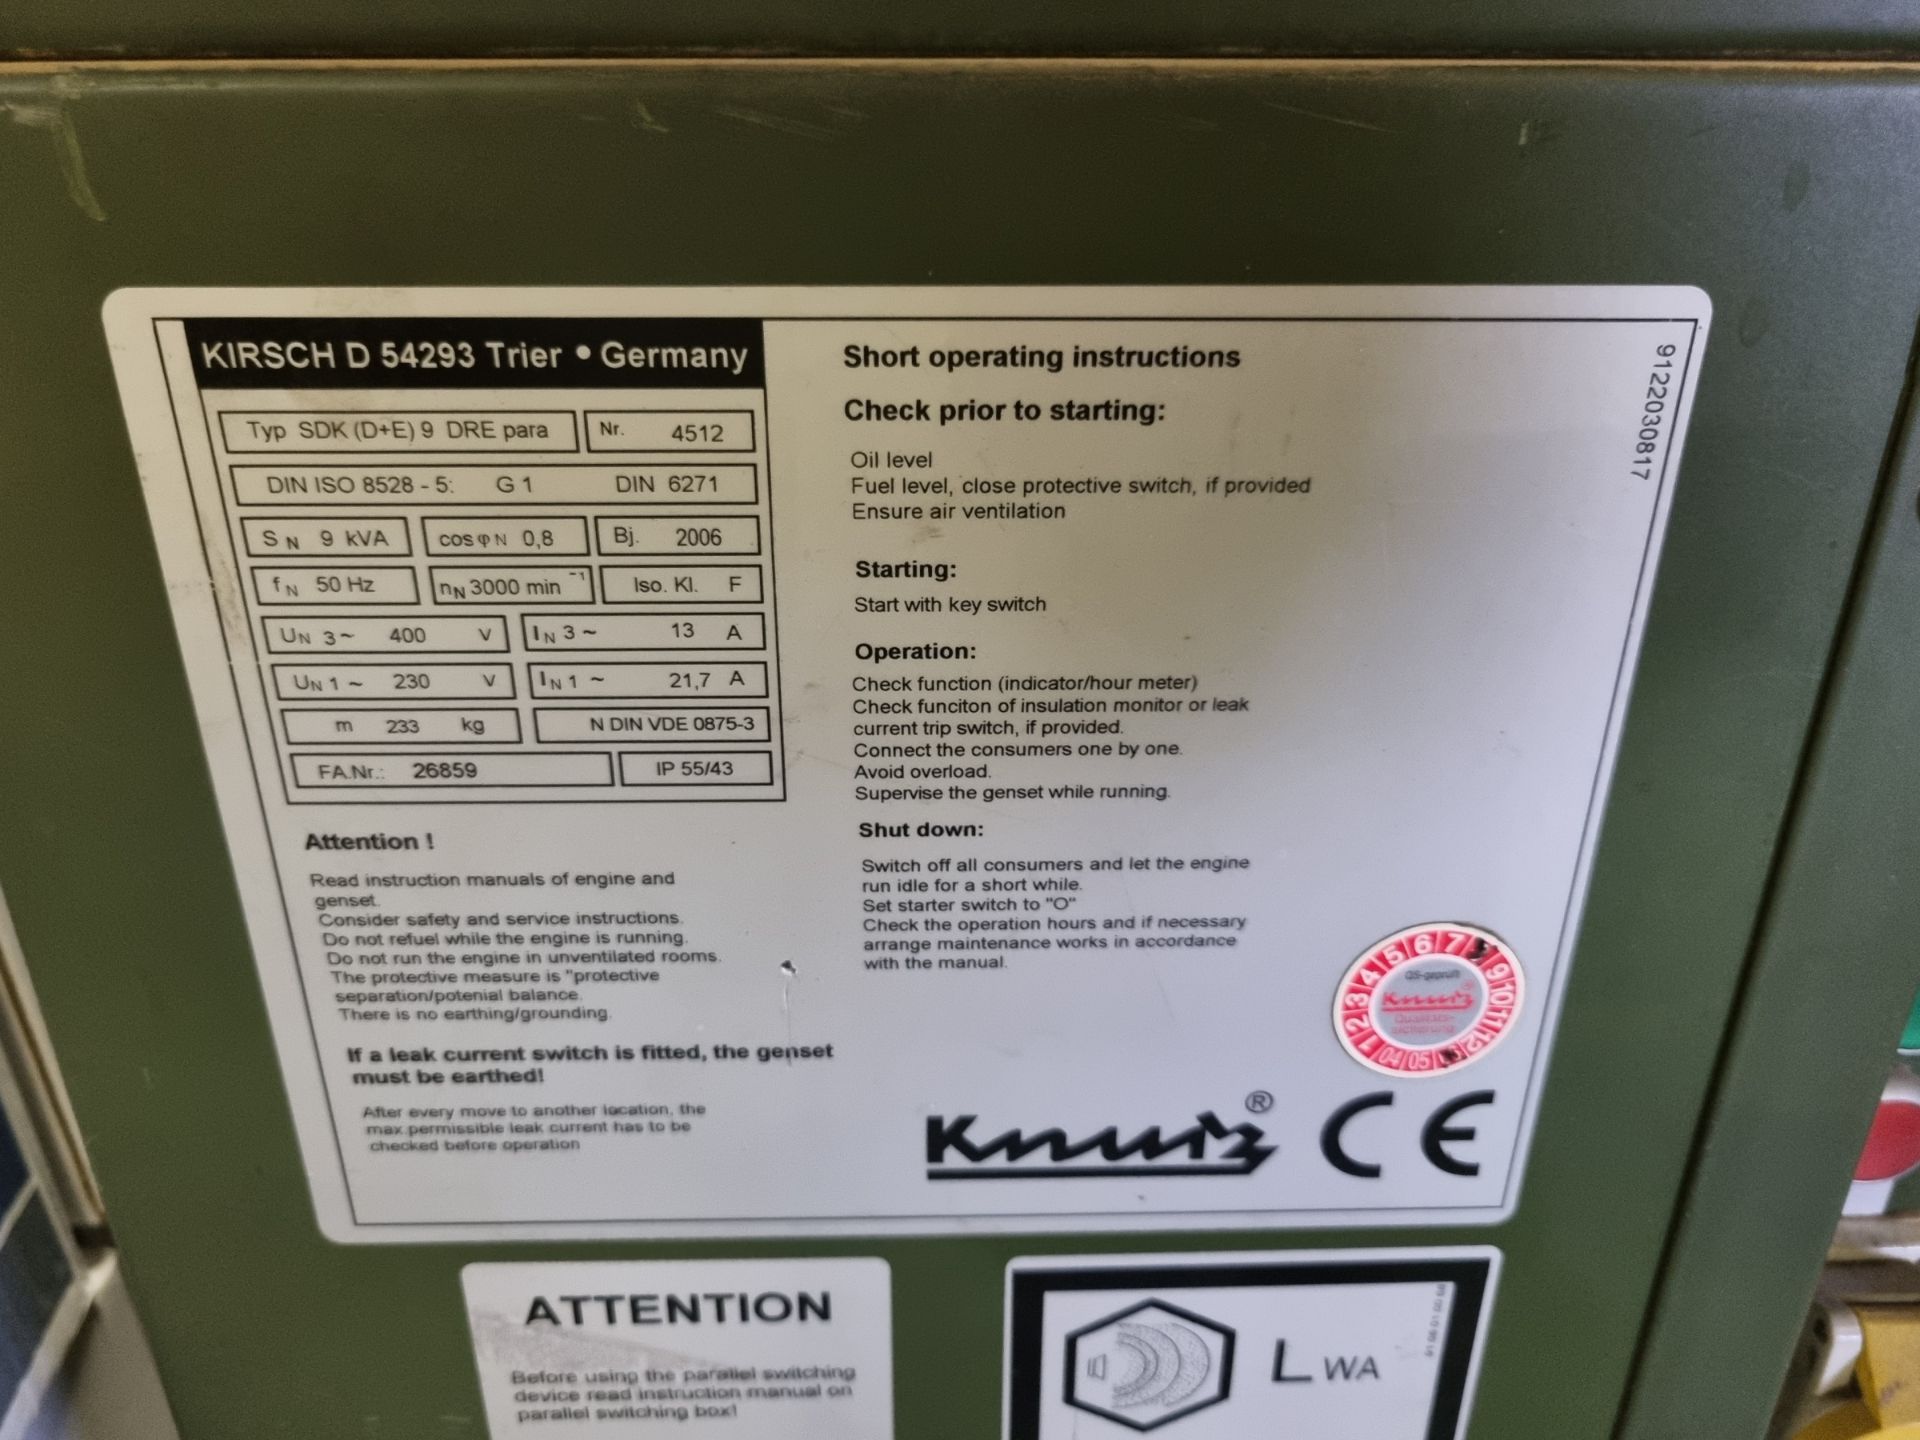 Knurz Kirsch D 54293 diesel generator Type SDK (D+E) 9 DRE - 9kVA - 2006 - 50Hz - Image 8 of 8